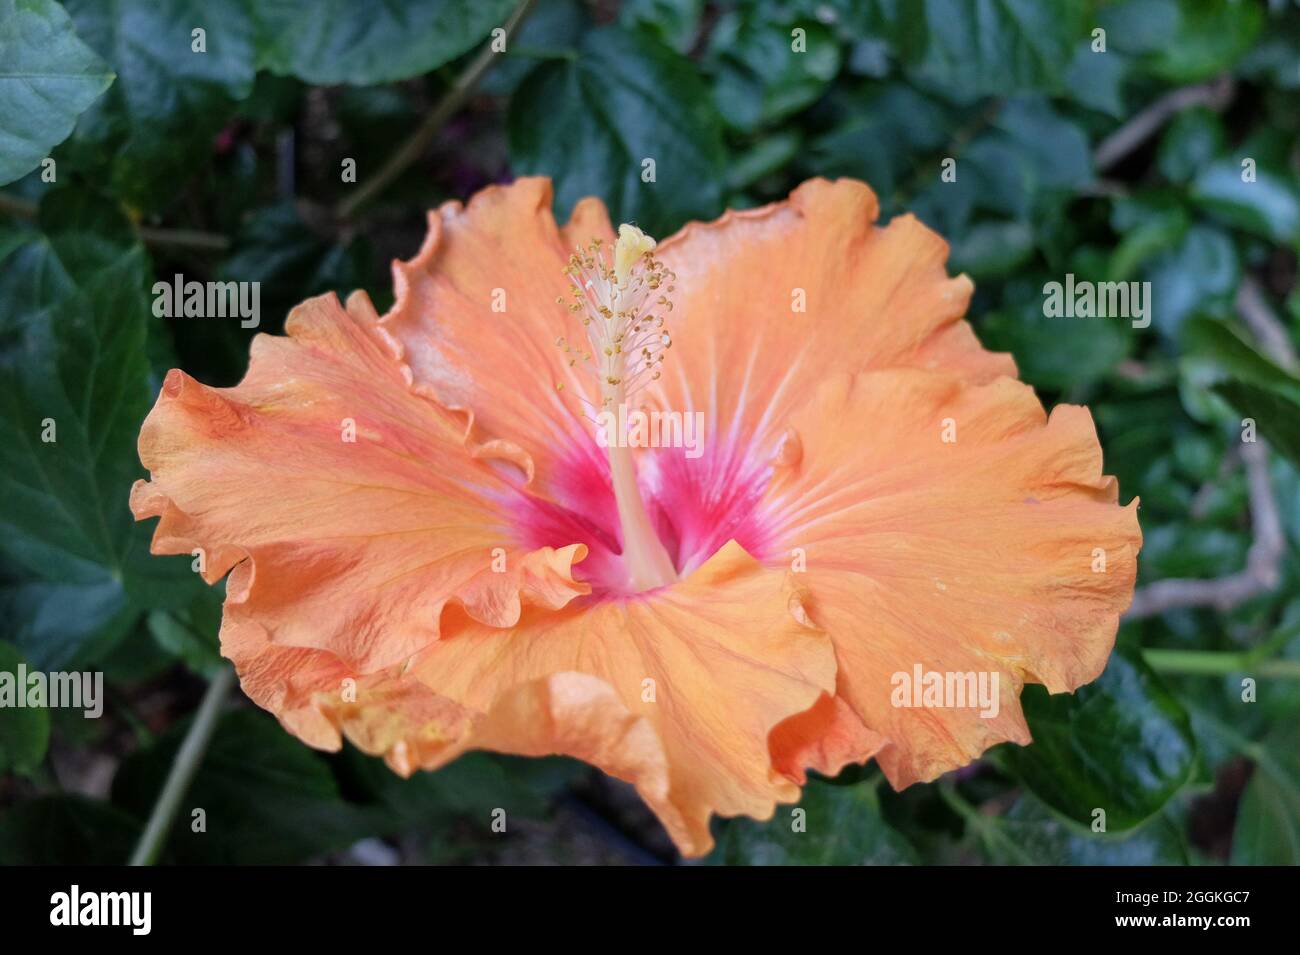 The rose hibiscus (Hibiscus rosa-sinensis) 'Summer sun' Stock Photo